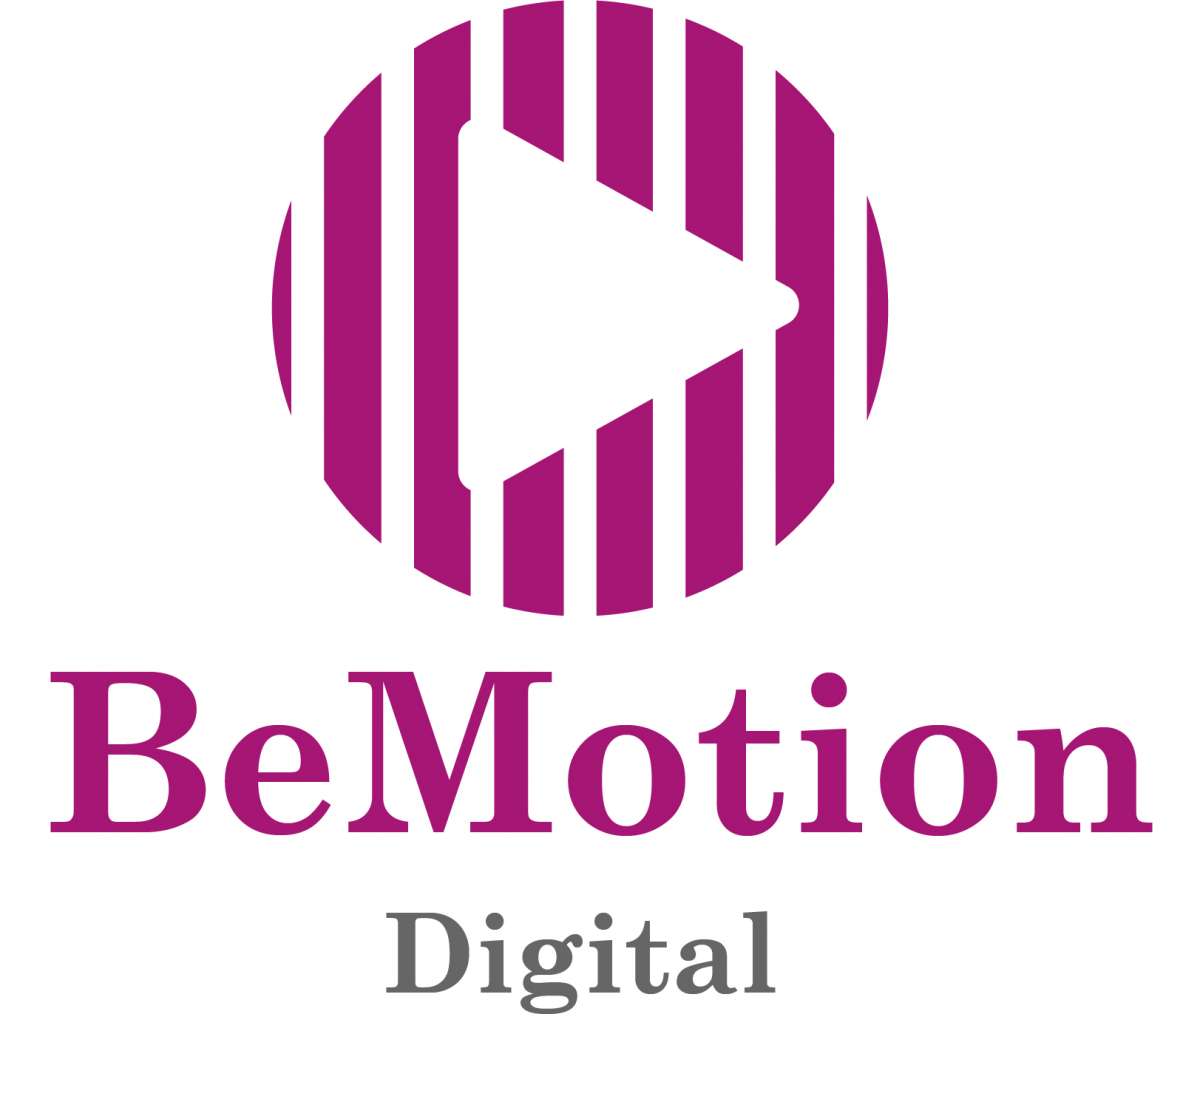 BeMotion Digital - Coimbra - Design de Logotipos